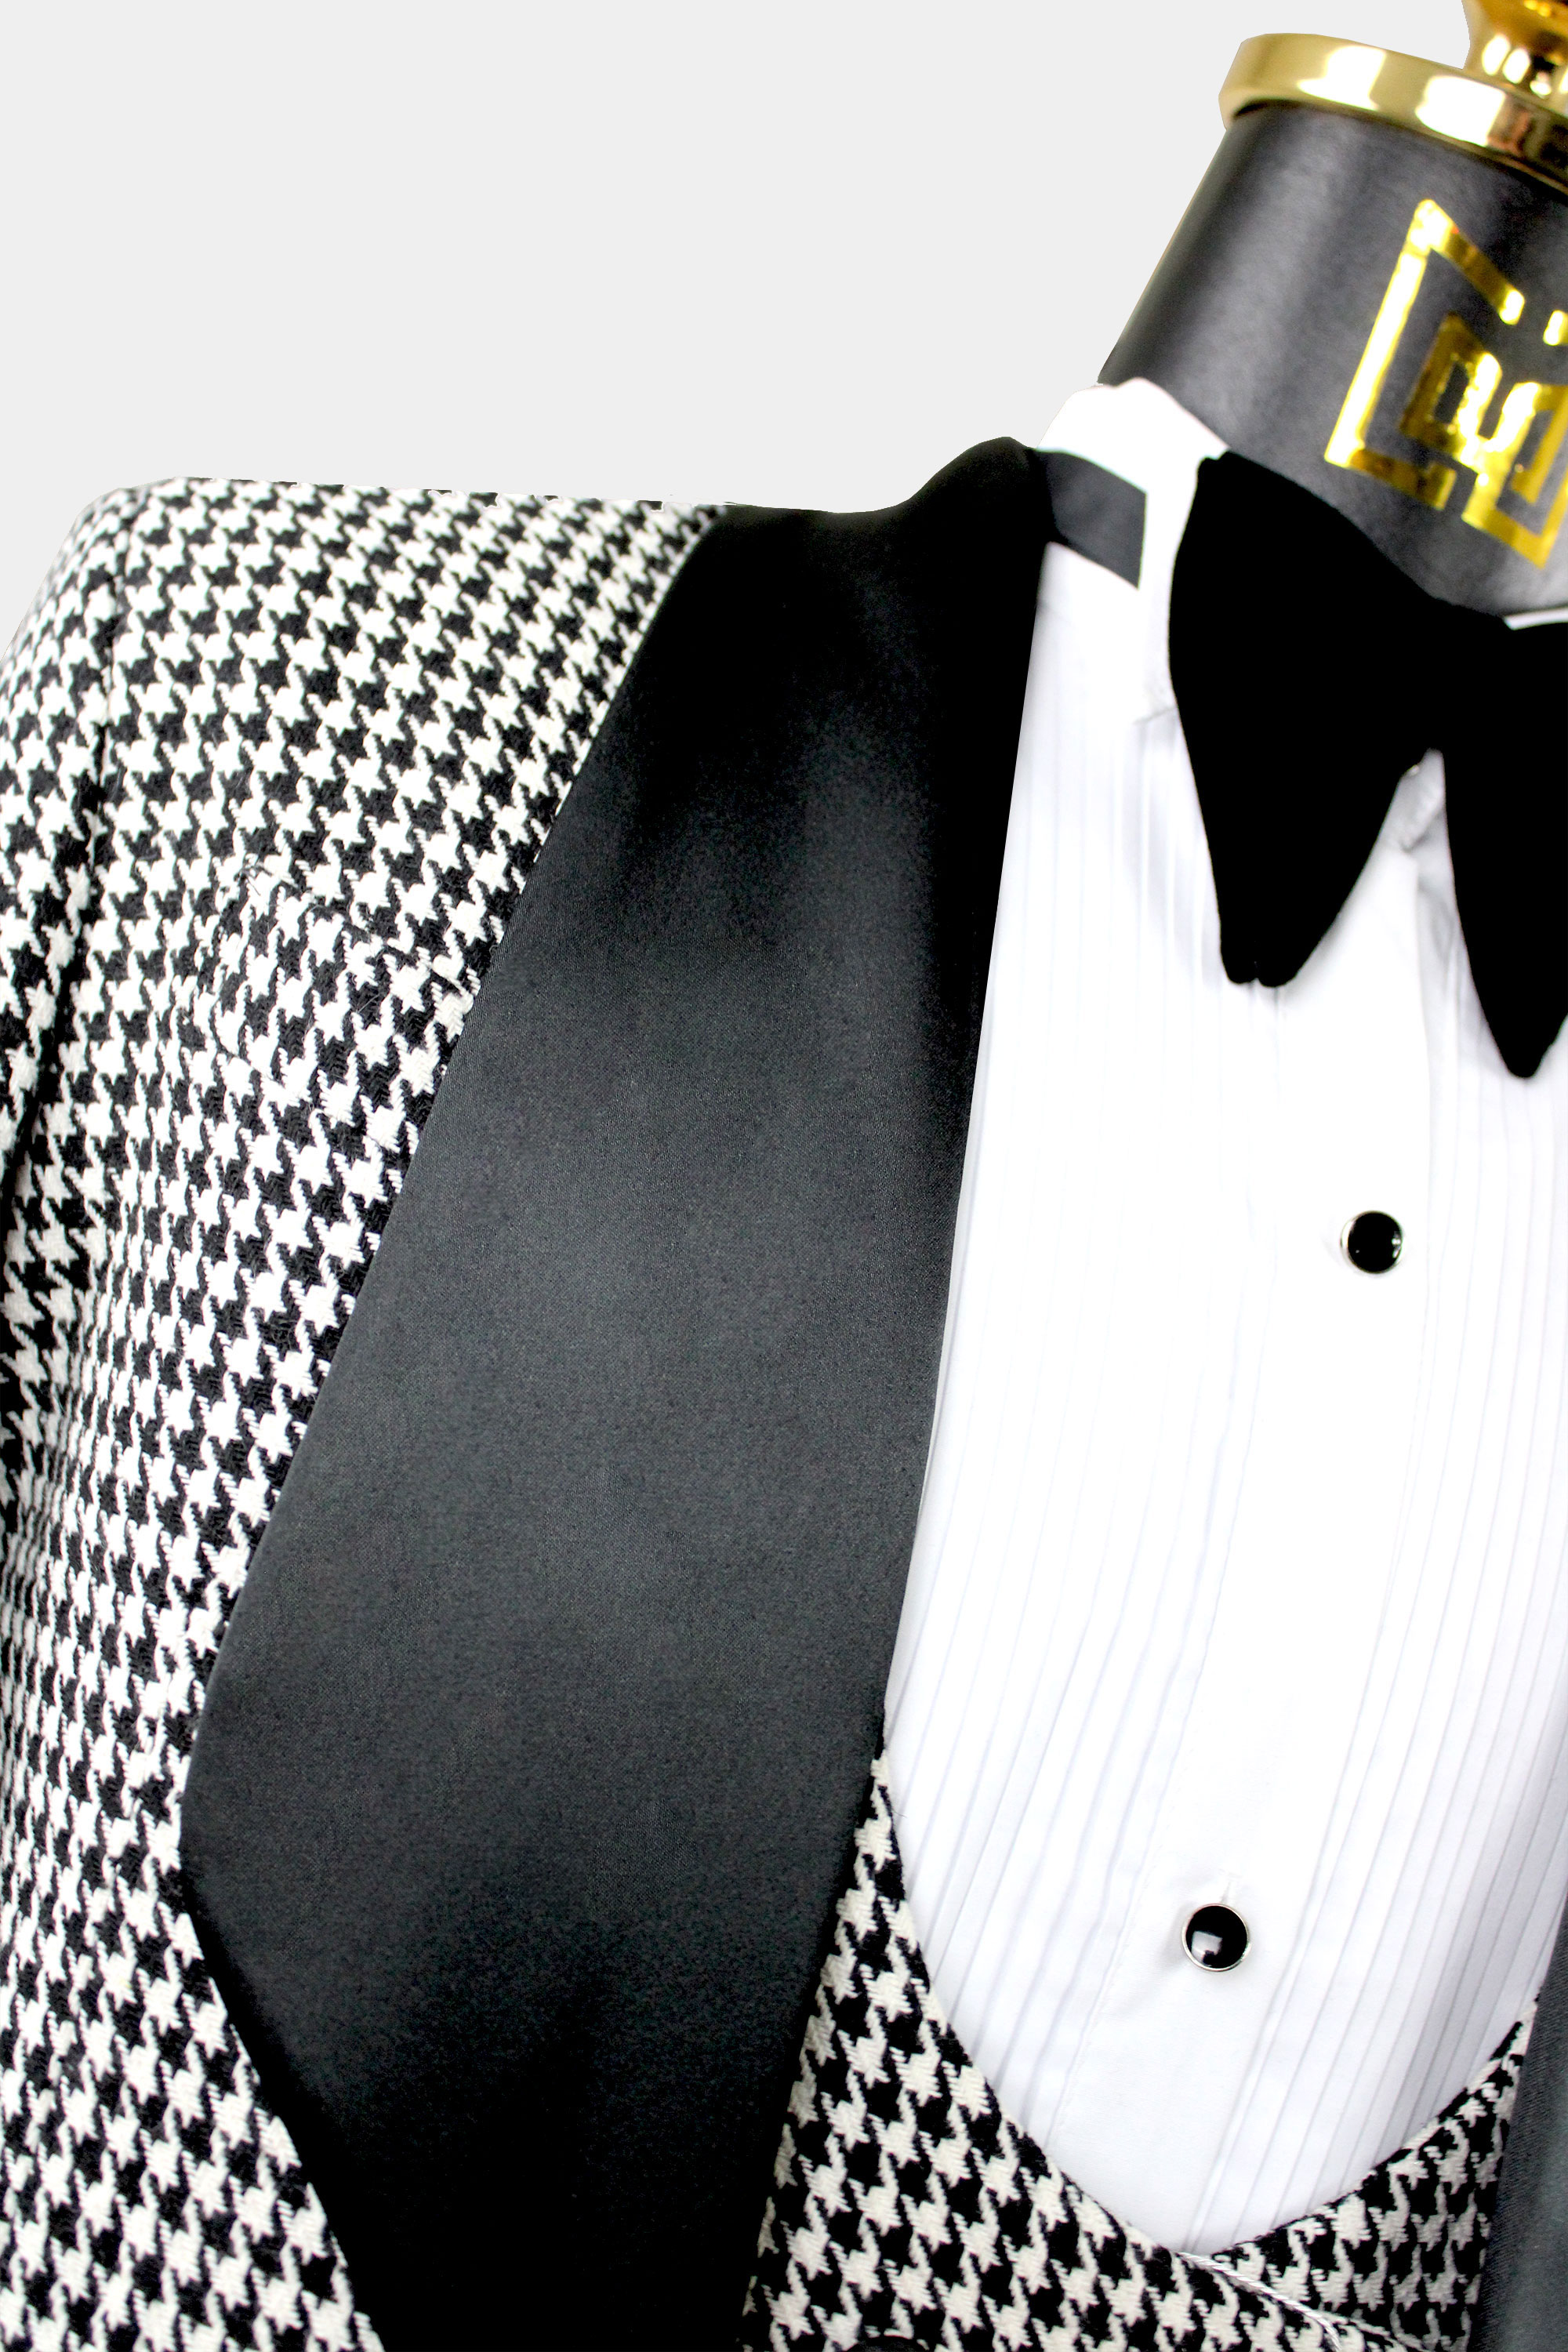 Houndstooth-Outfit-Groom-Wedding-Suit-from-Gentlemansguru.com_